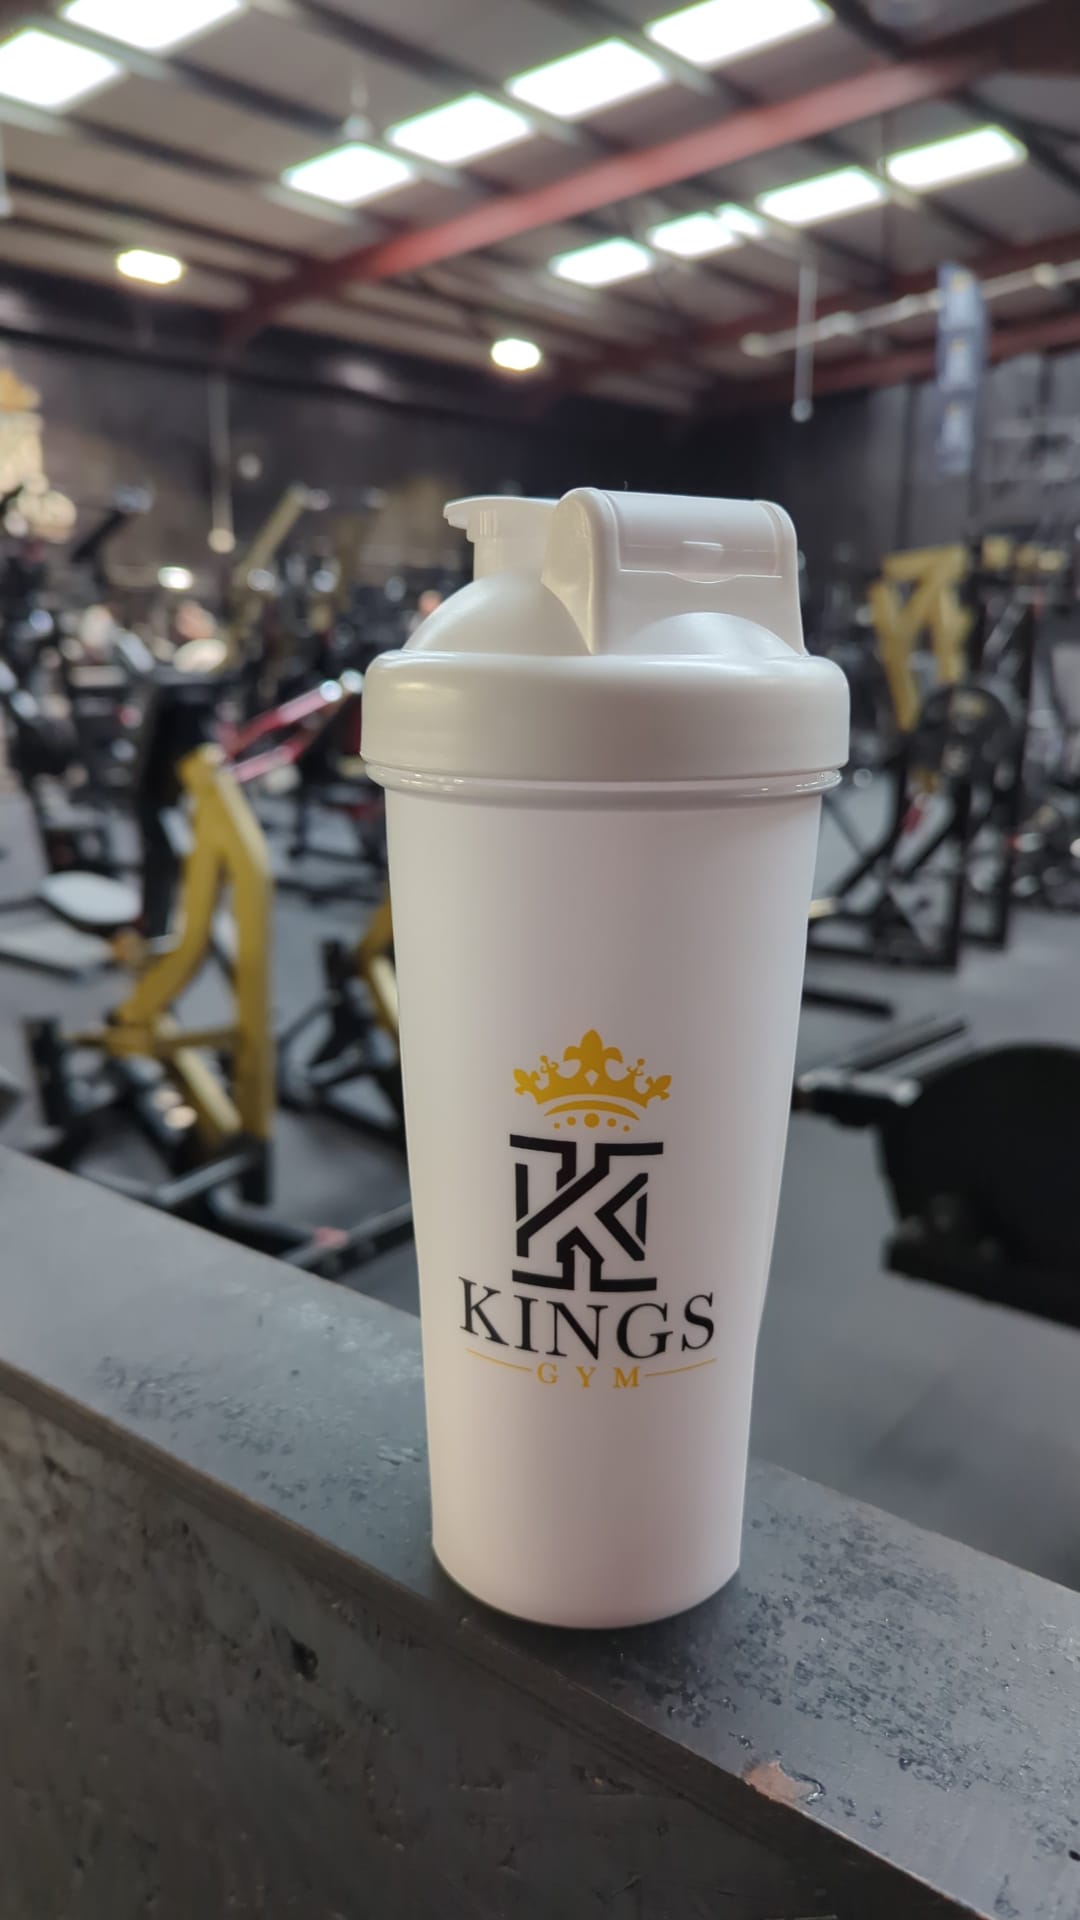 King gym shaker bottle